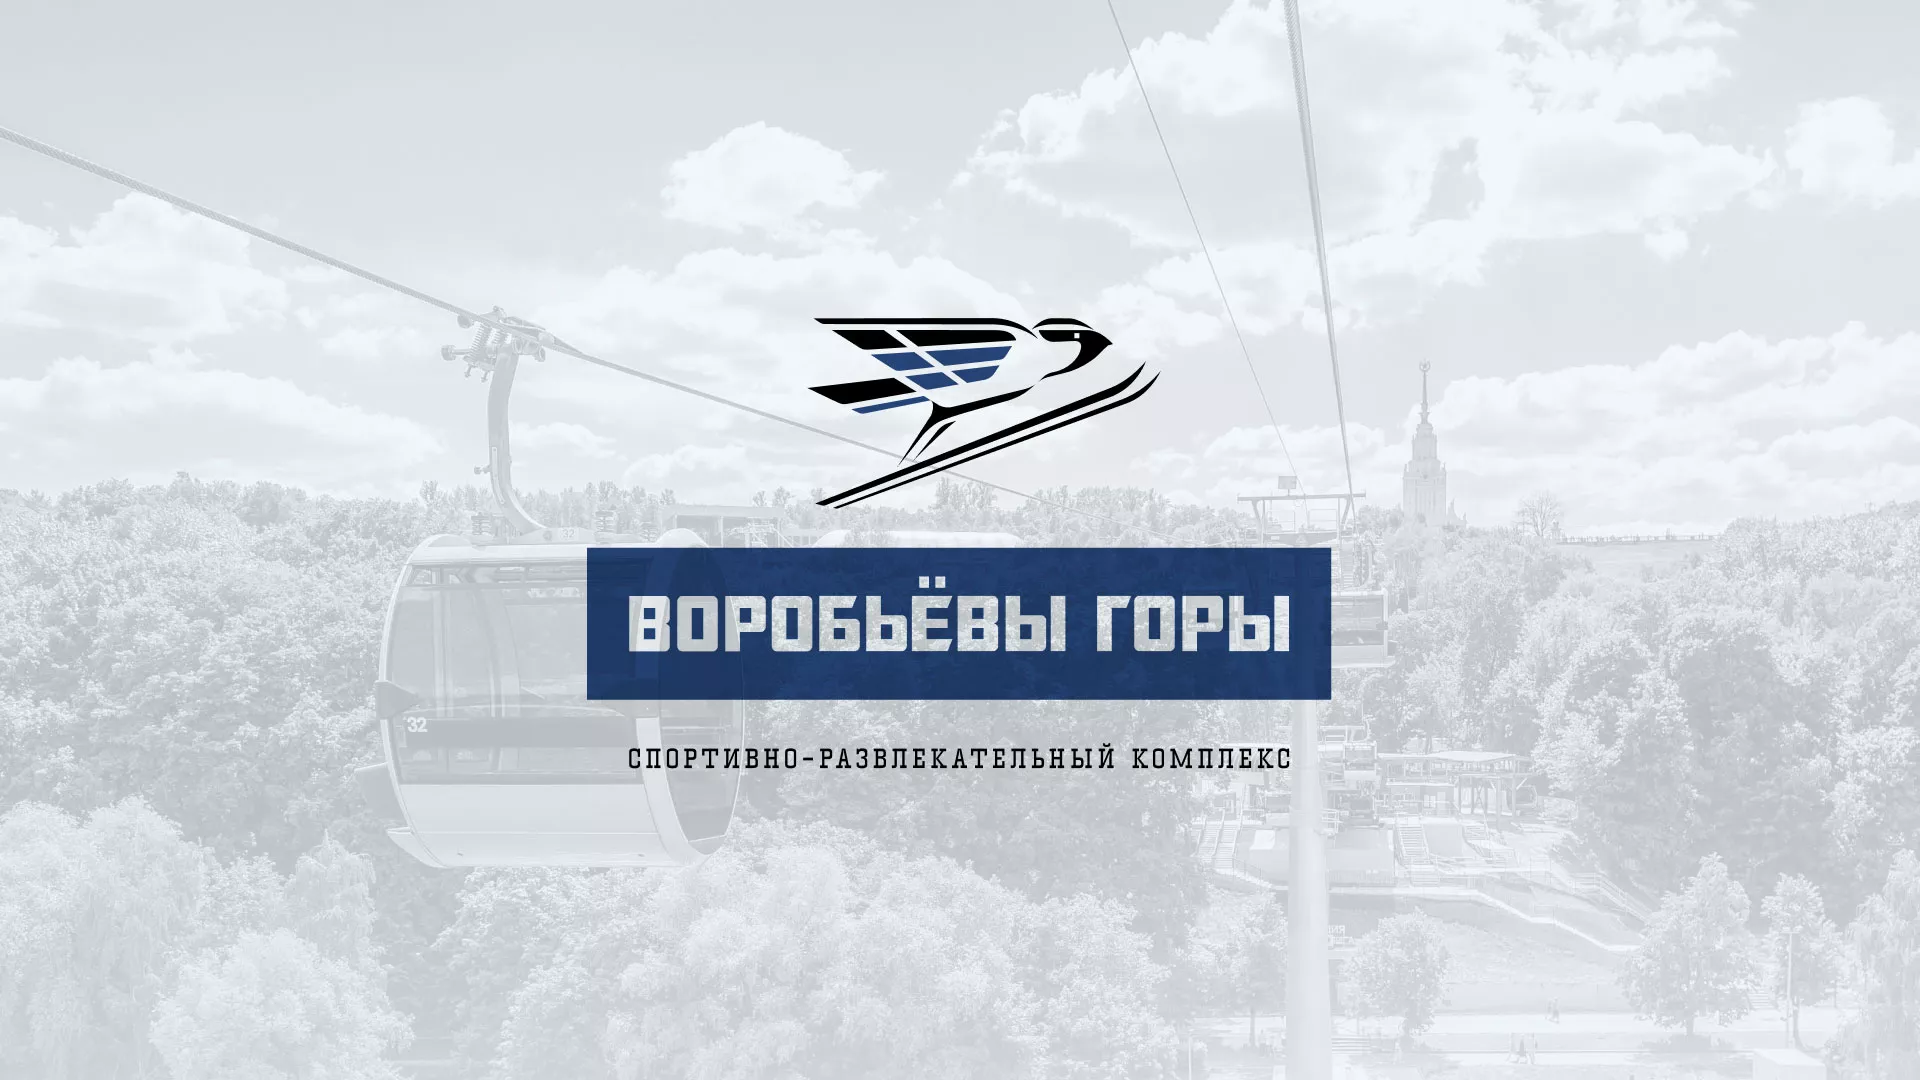 Разработка сайта в Архангельске для спортивно-развлекательного комплекса «Воробьёвы горы»